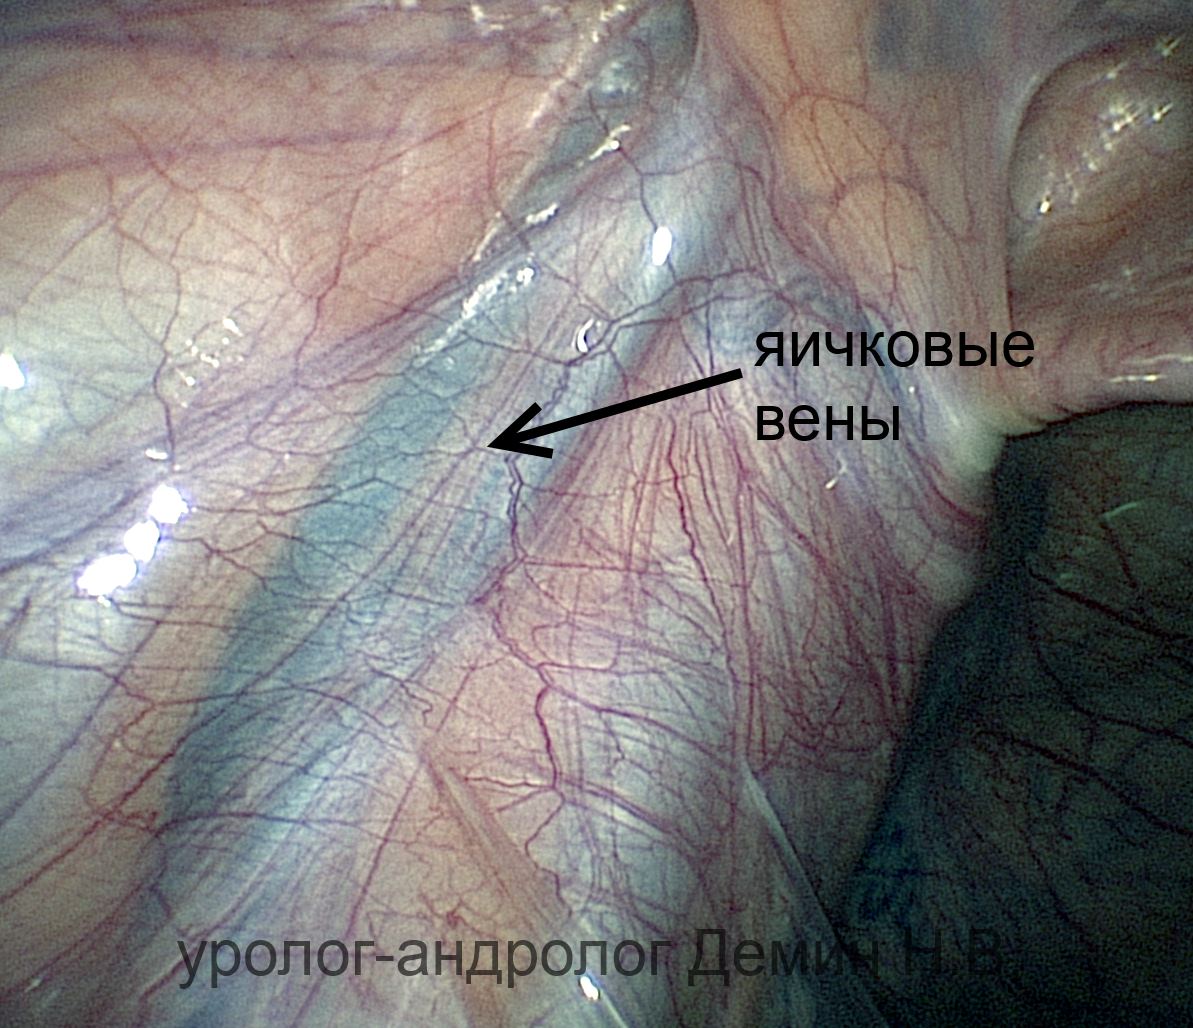 Лапароскопия, расширенные яичковые вены, фото